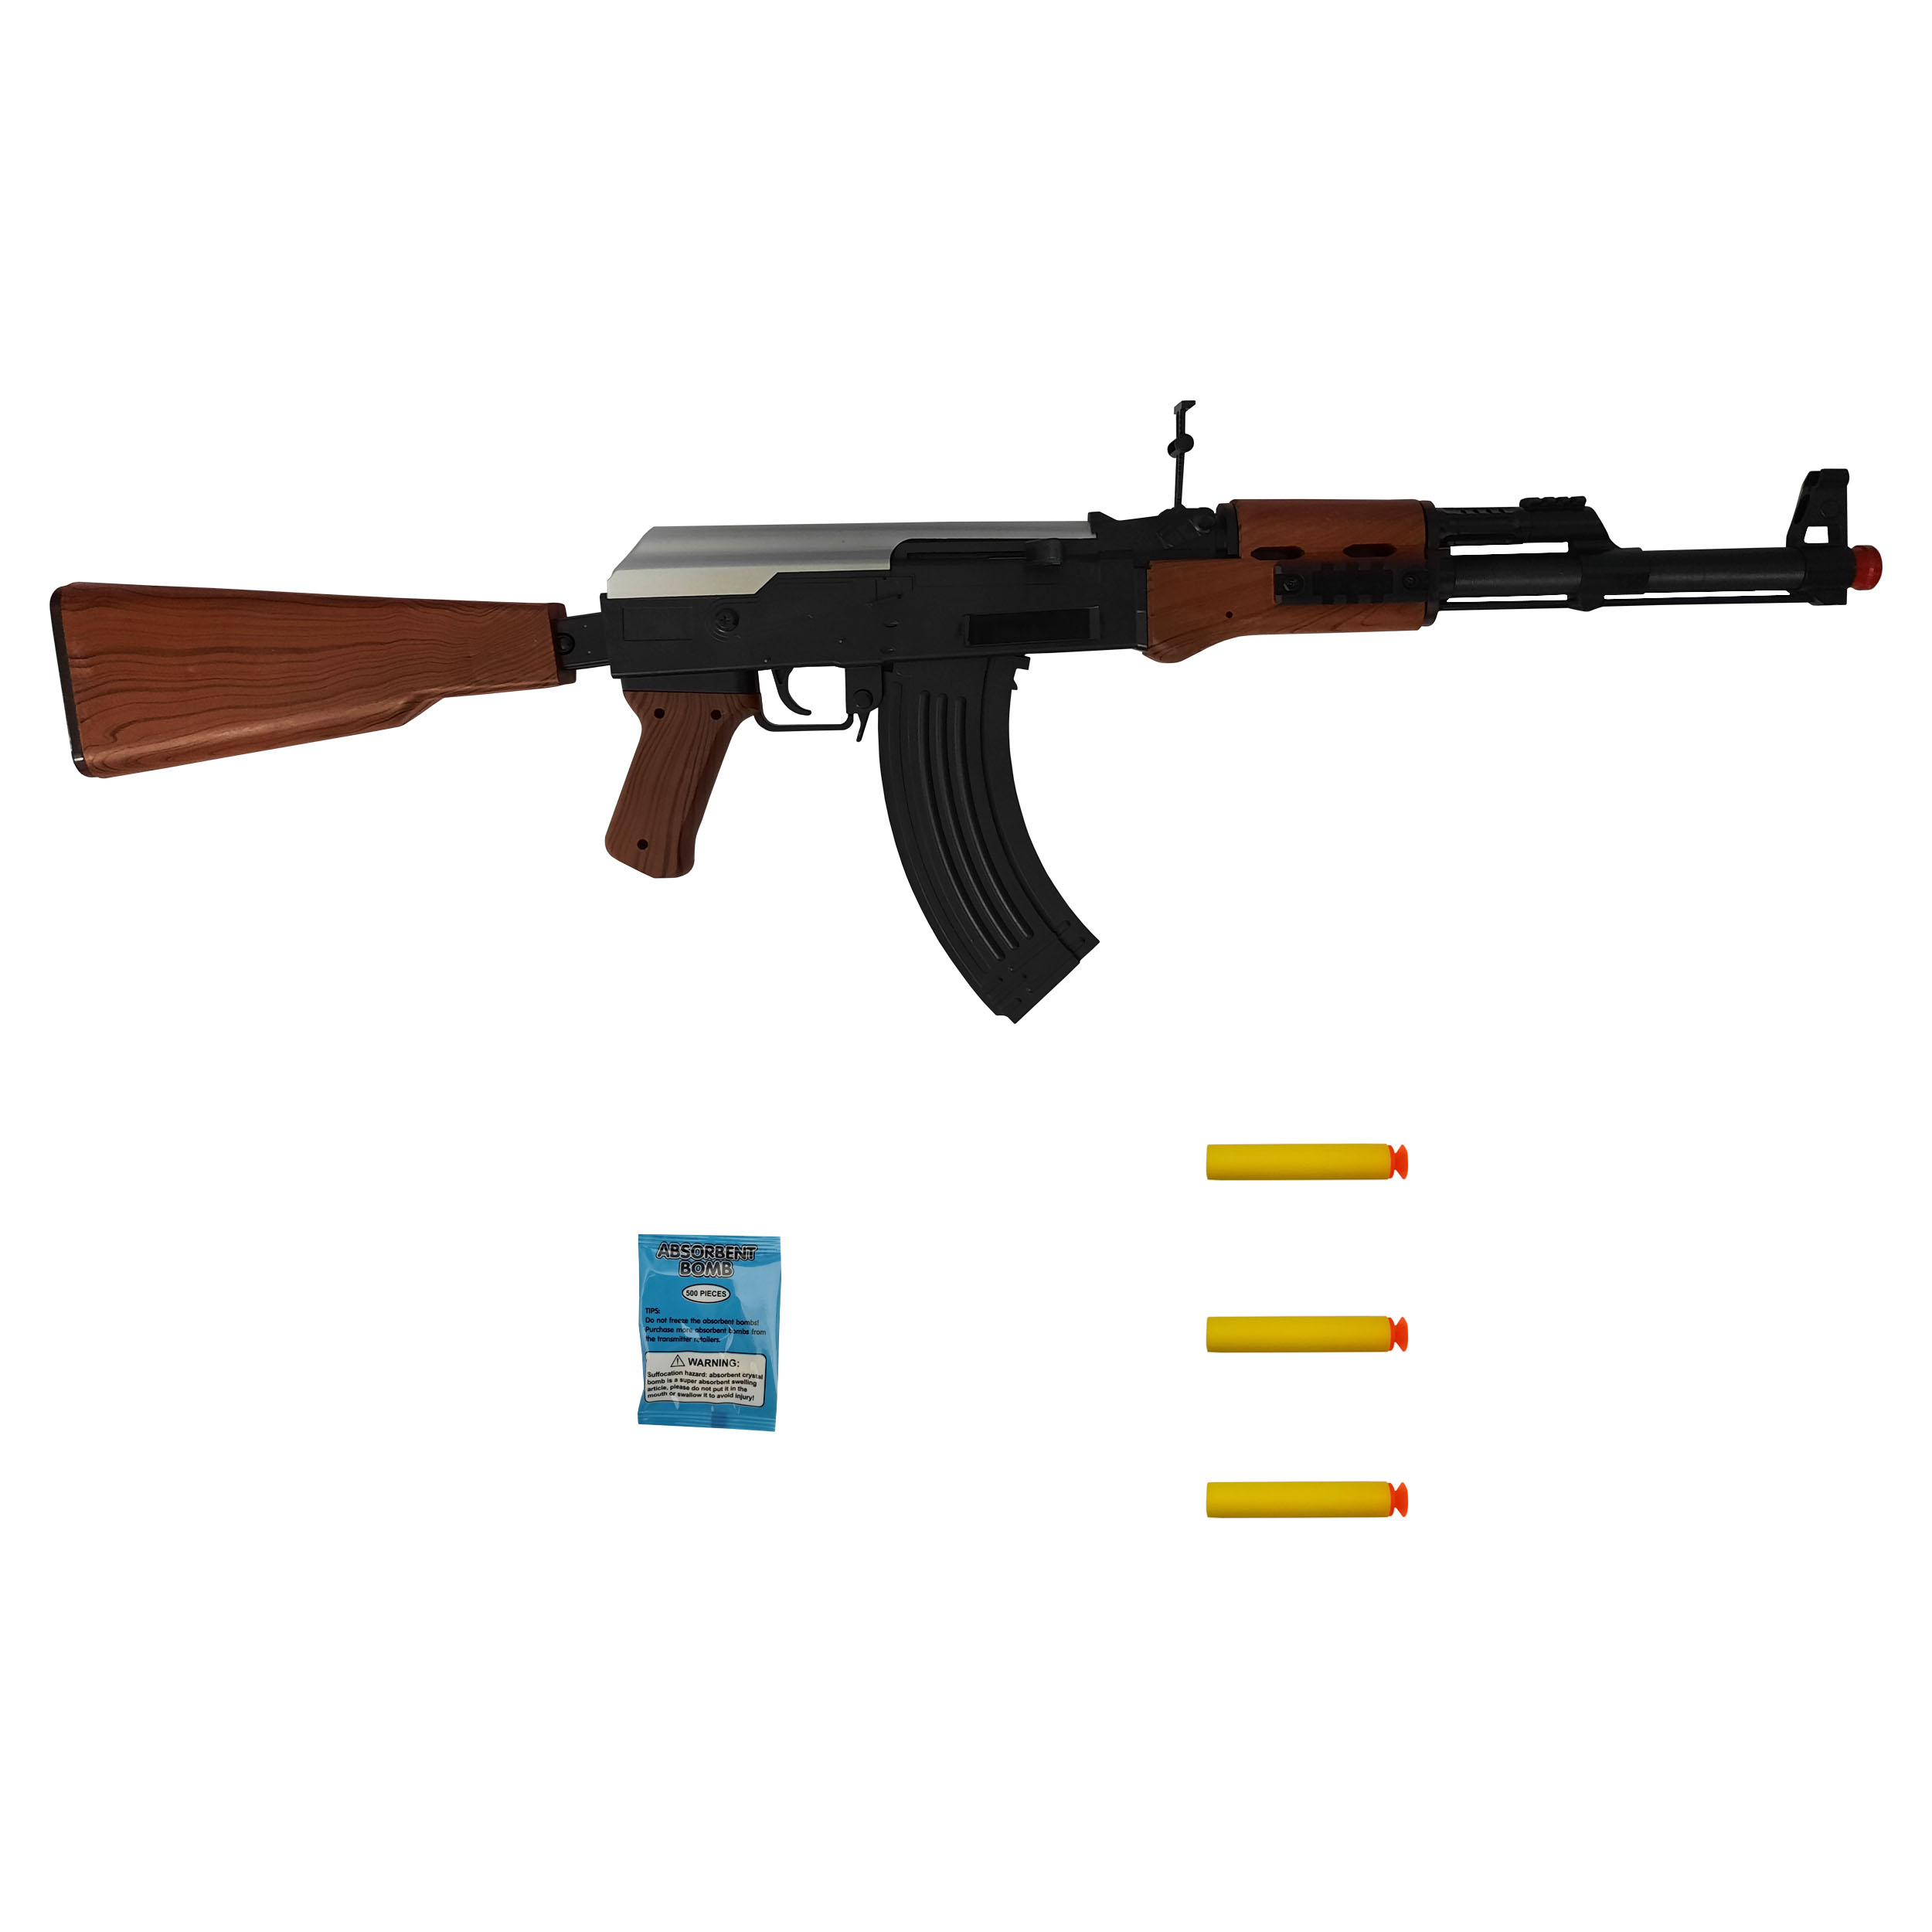 نقد و بررسی تفنگ بازی طرح کلاشینکف مدل AK123 کد 500 مجموعه 5 عددی توسط خریداران